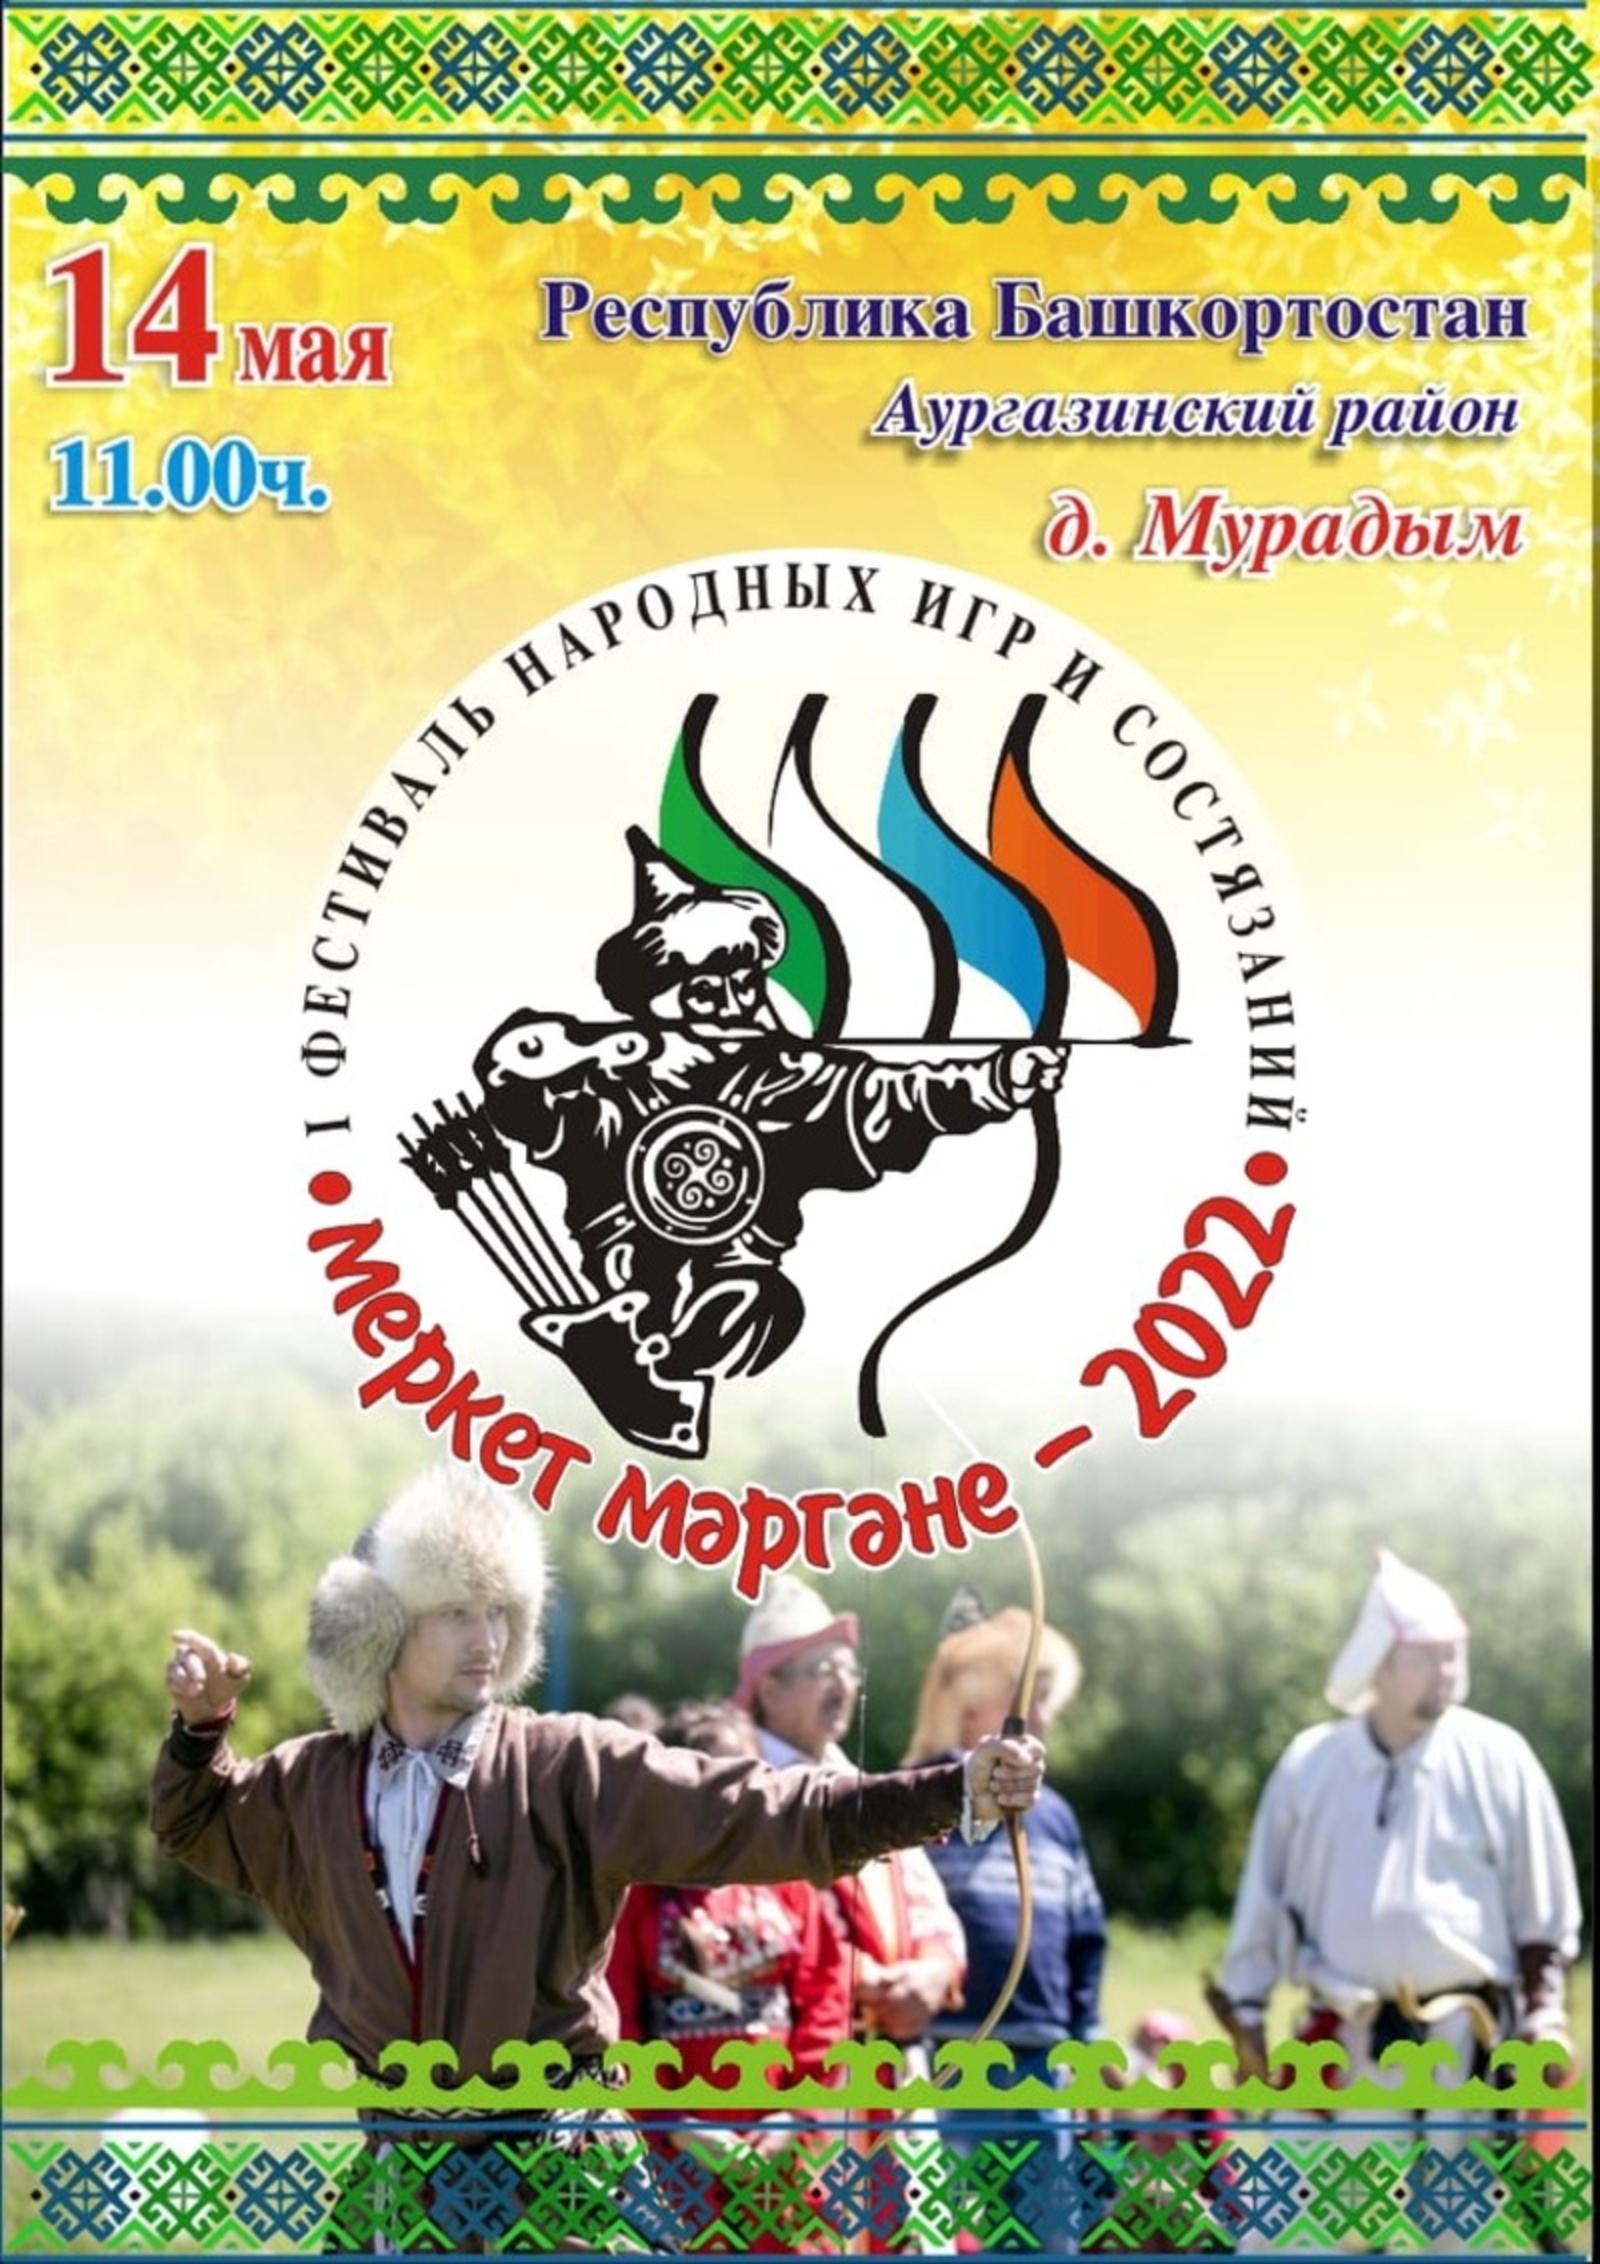 В Аургазинском районе Башкирии пройдёт республиканский фестиваль народных игр